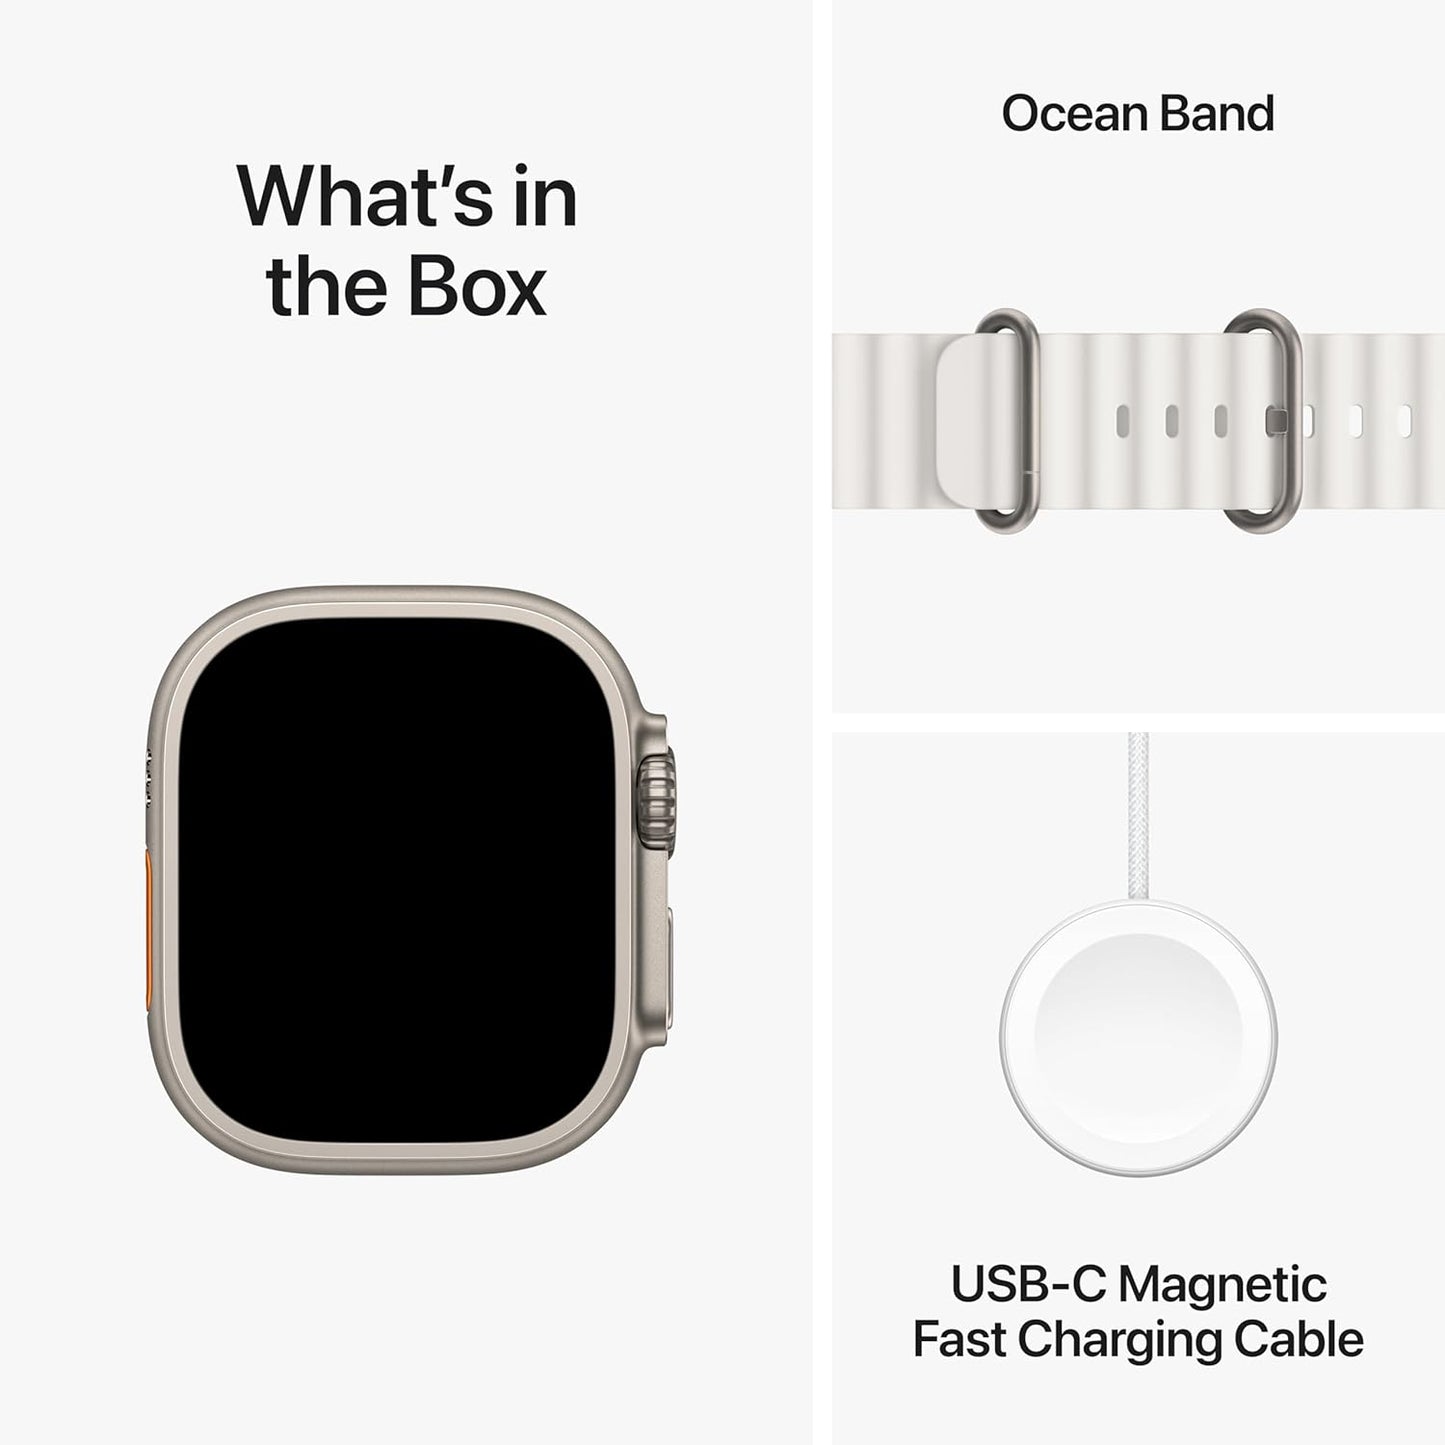 ساعة Apple Watch Ultra 2 [GPS + Cellular 49mm] الذكية مع هيكل متين من التيتانيوم وسوار محيطي أبيض. جهاز تعقب اللياقة البدنية، نظام تحديد المواقع العالمي (GPS) الدقيق، زر الإجراء، عمر بطارية طويل جدًا، شاشة شبكية العين الساطعة 